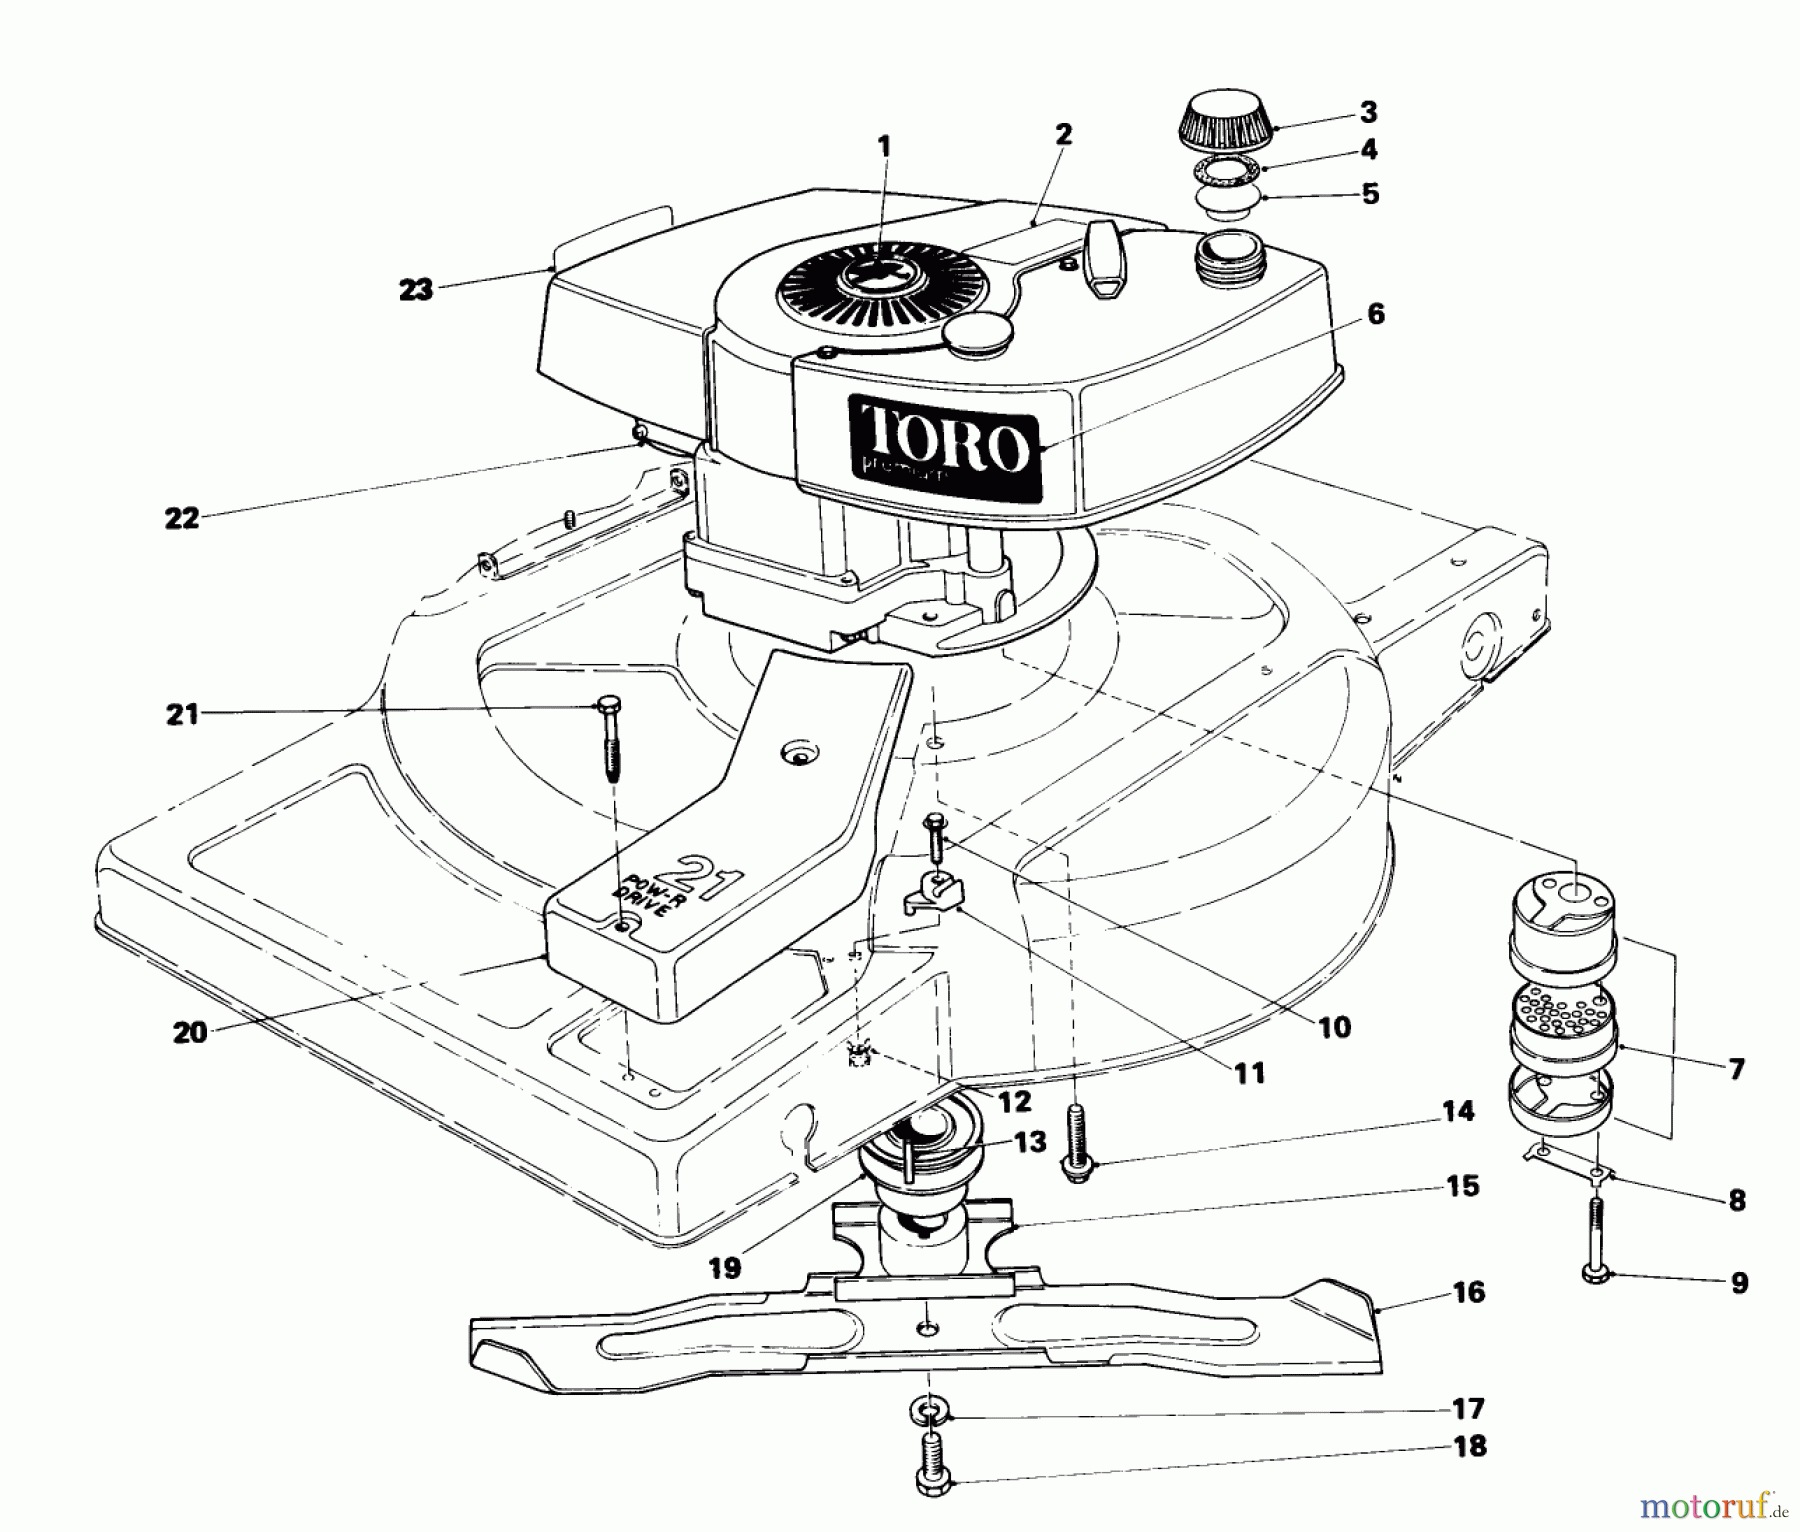  Toro Neu Mowers, Walk-Behind Seite 1 18010 - Toro Lawnmower, 1981 (1000001-1999999) ENGINE ASSEMBLY (MODEL 18010)